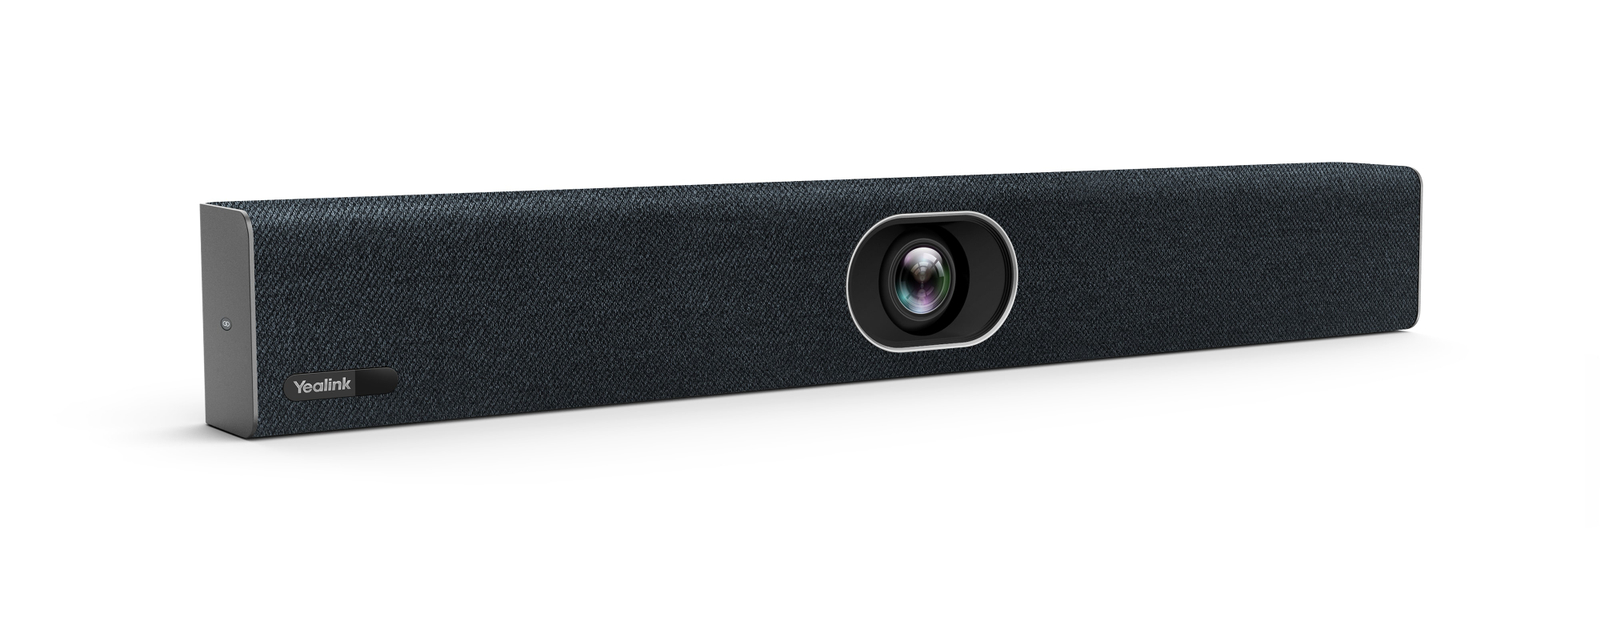 YEALINK Webcam Room System UVC40-BYOD online kaufen | Pollin.at